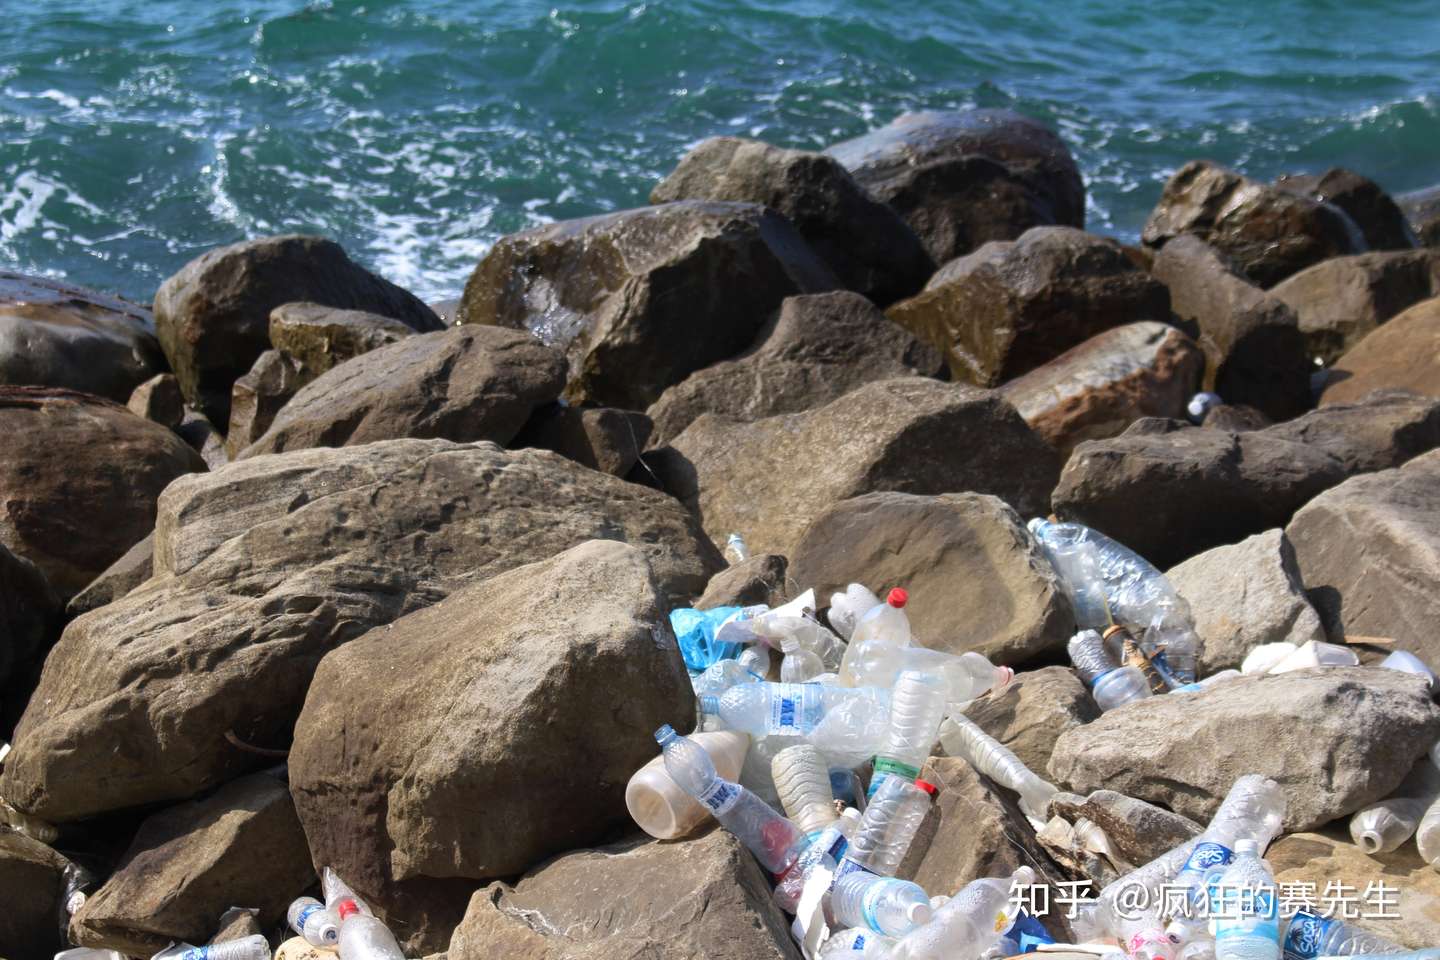 海洋塑料污染到底有多严重 一组数据告诉你答案 知乎